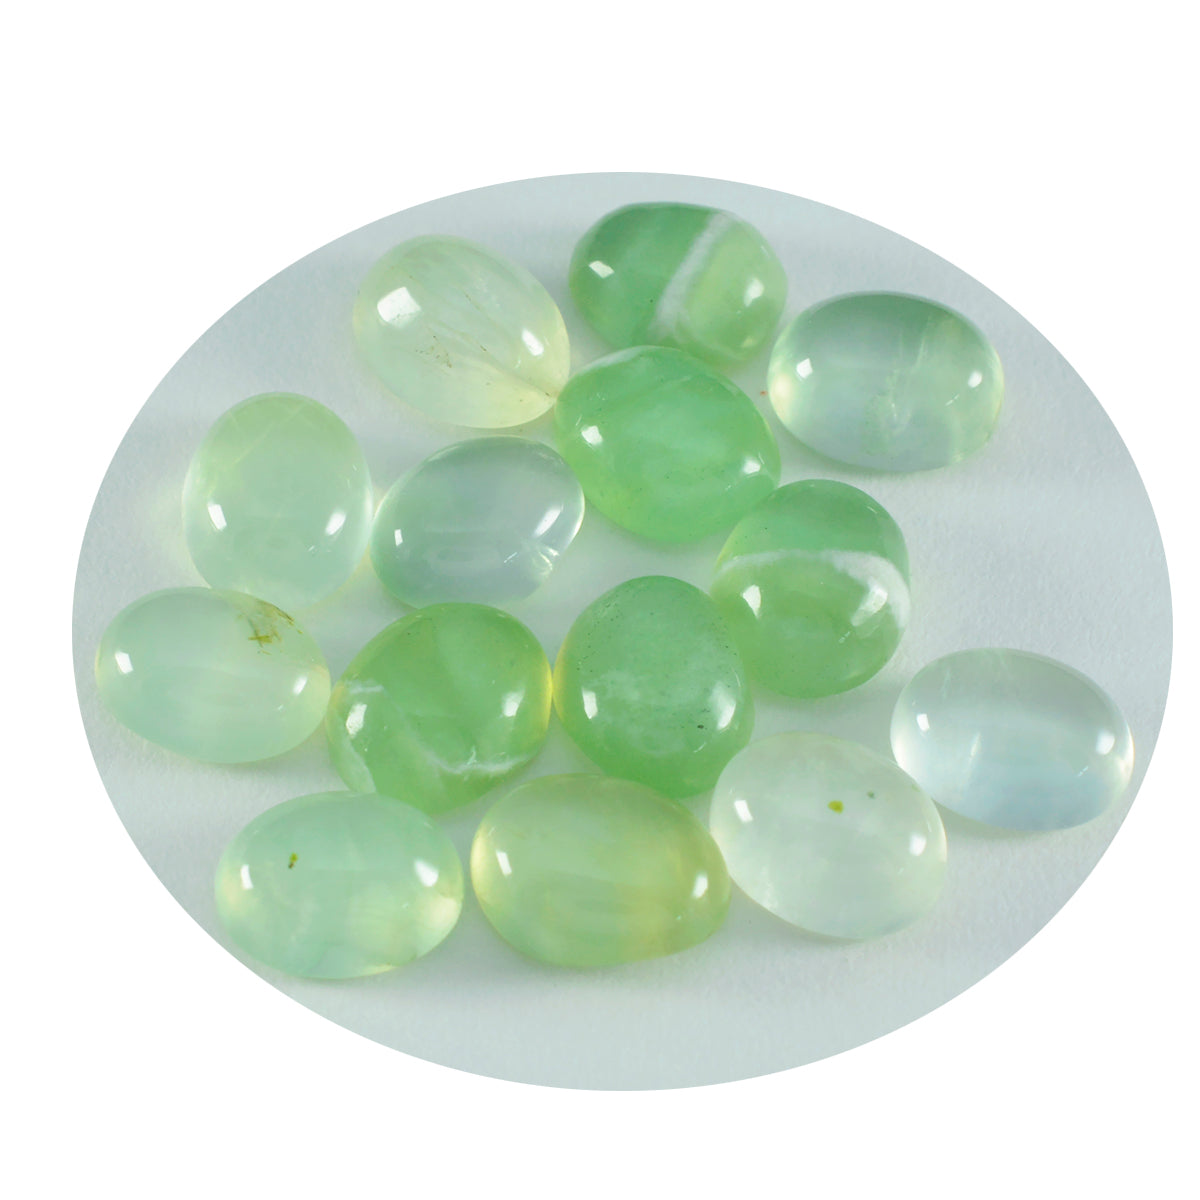 riyogems 1шт зеленый пренит кабошон 8x10 мм овальной формы A+1 качество свободный драгоценный камень